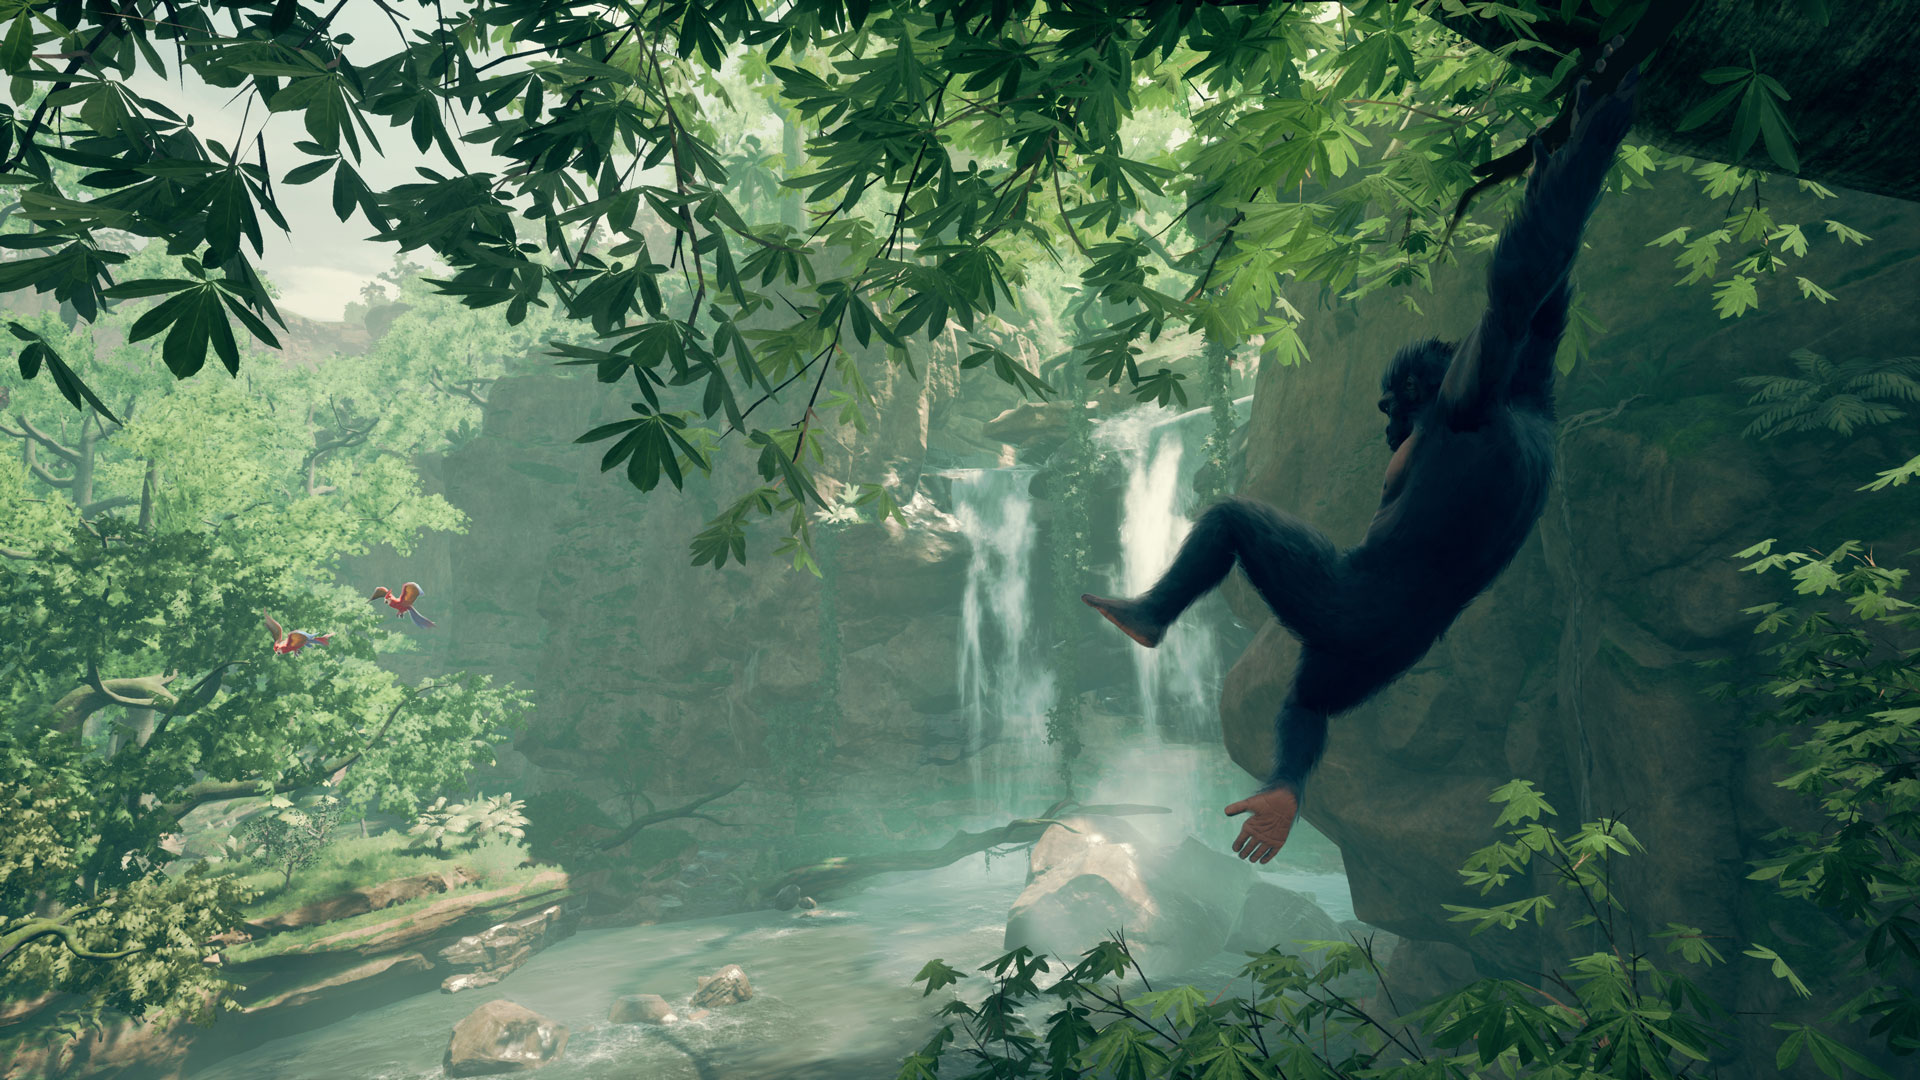 Ancestors - Rainforest computer game landscape